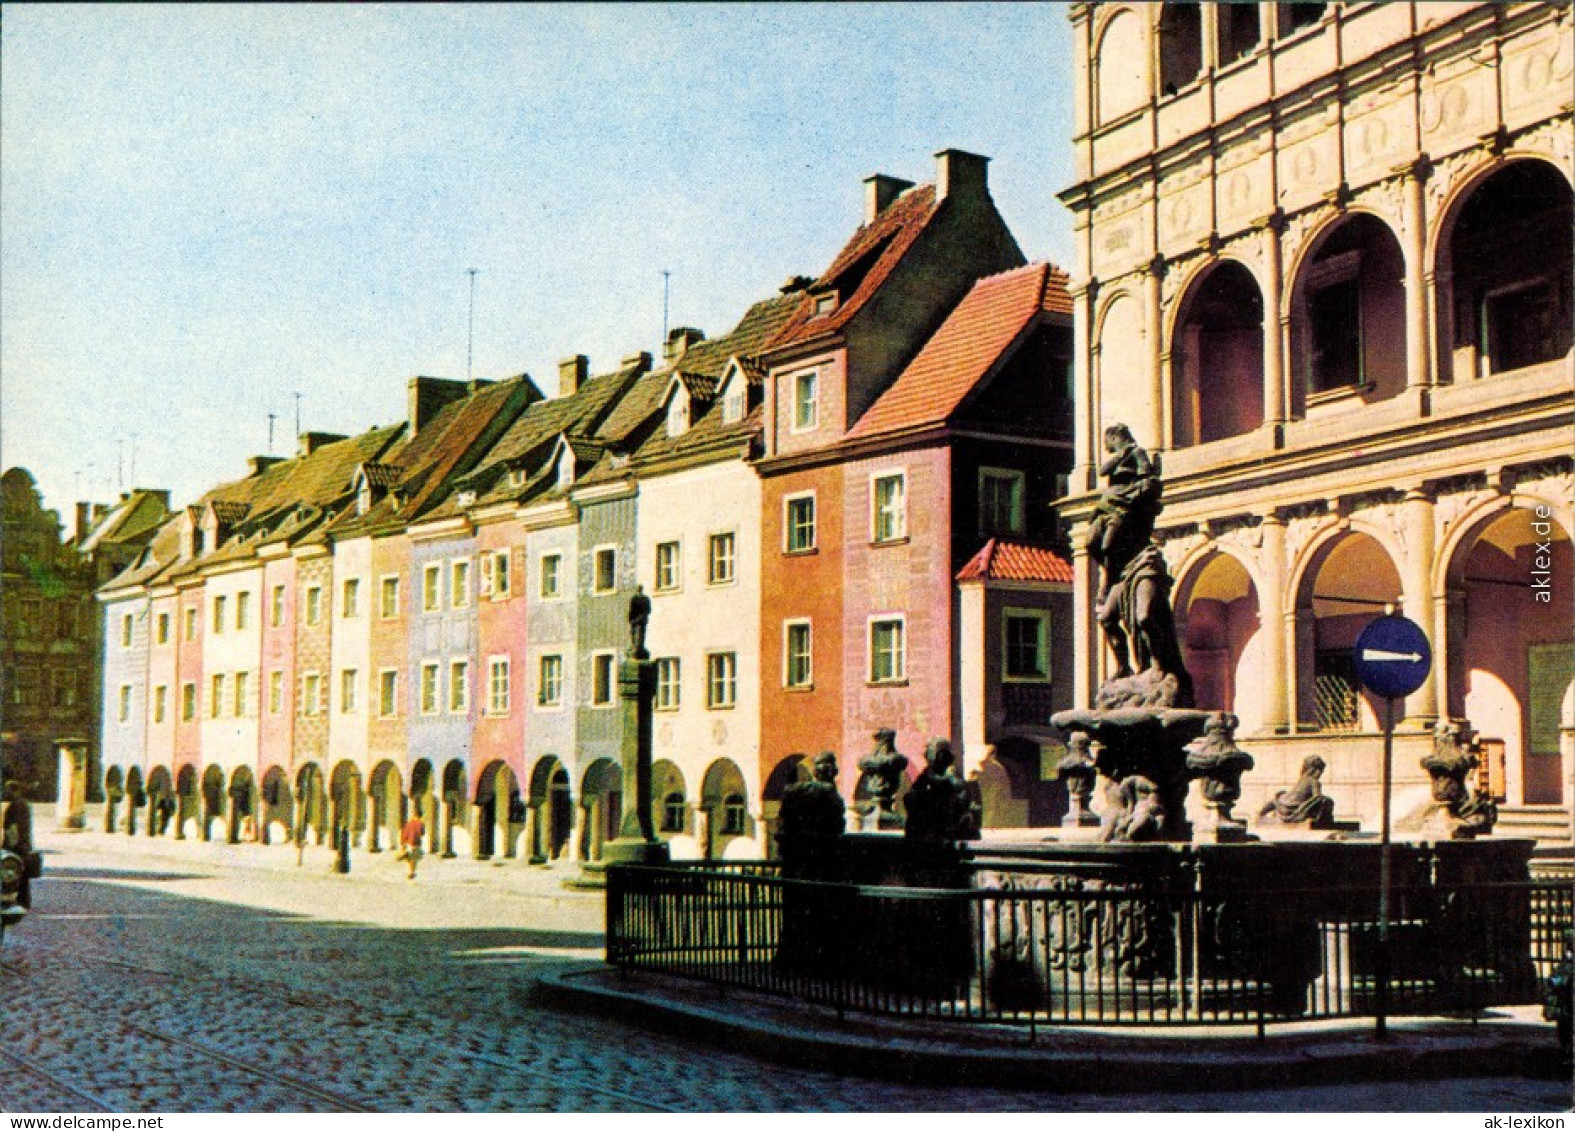 Ansichtskarte Posen Poznań Fragment Starego Rynku Platz 1972 - Polen